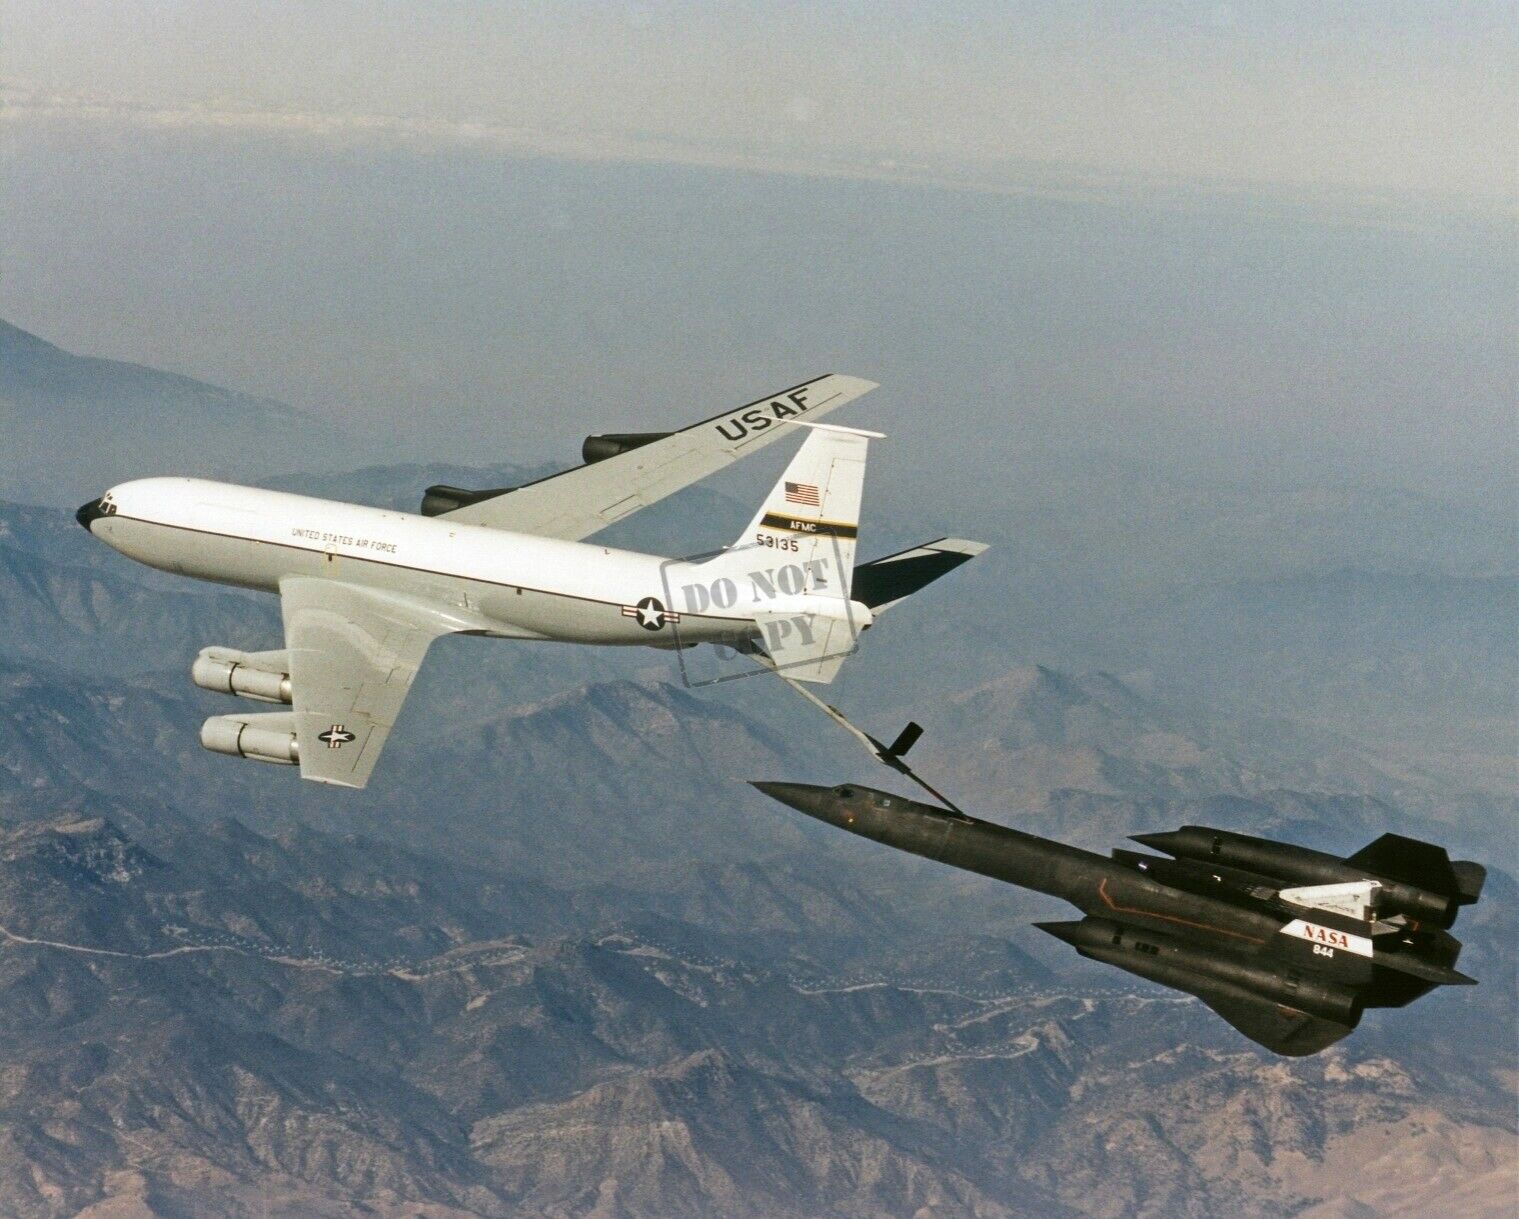 SR-71 Blackbird refuels US Airforce USAF KC-135 aircraft 12X18 Photograph NASA D